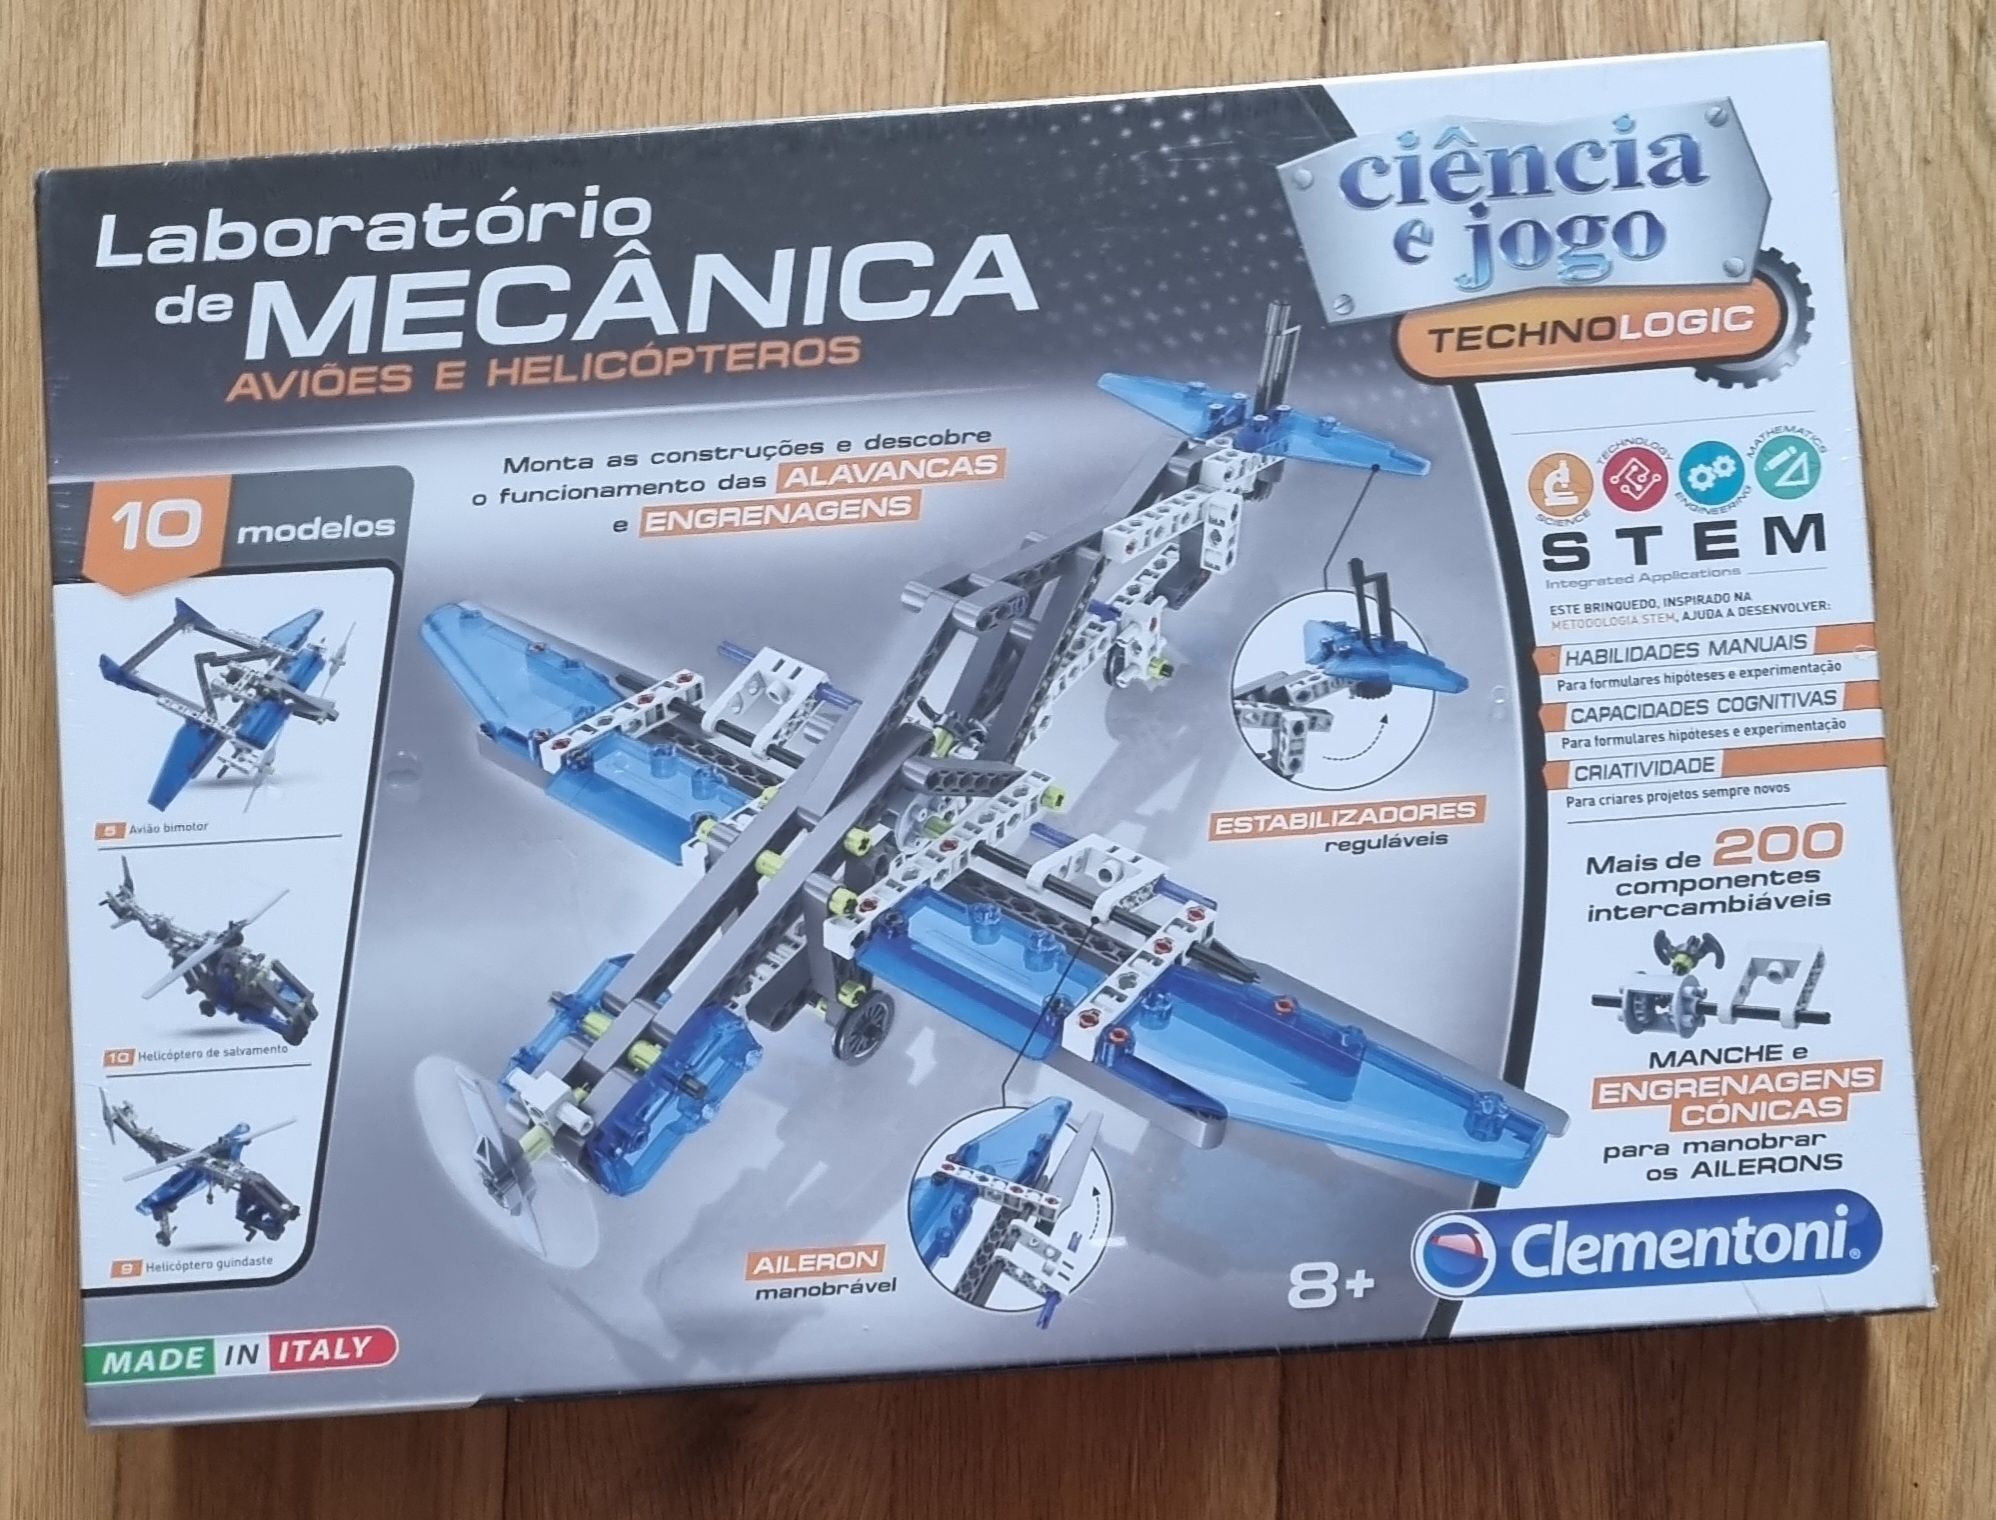 Lego Clementoni: Laboratório de mecânica aviões e helicópteros